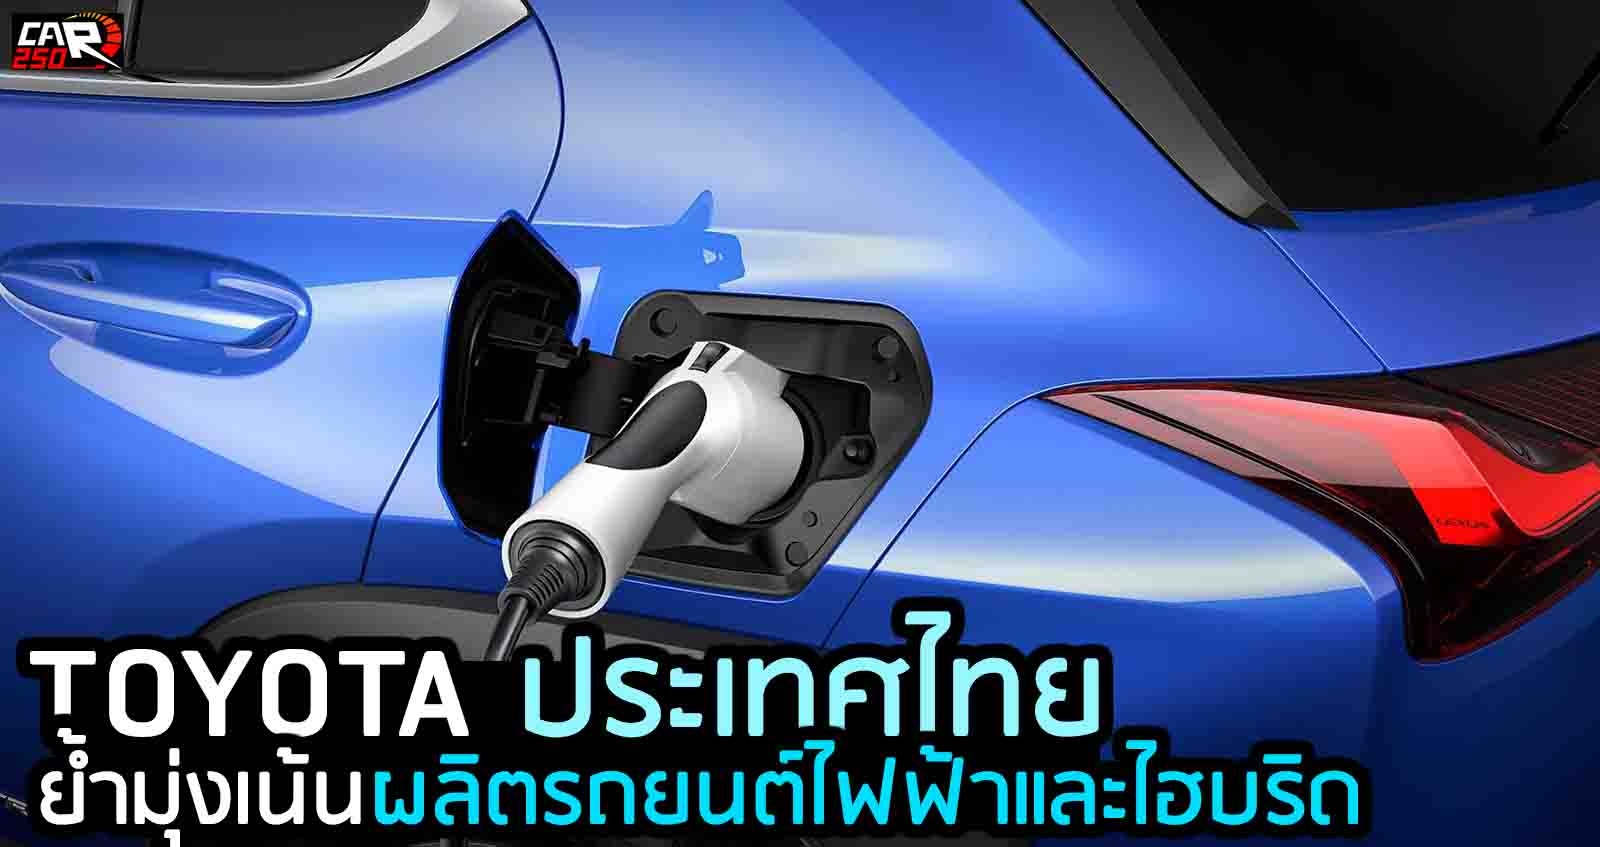 TOYOTA ประเทศไทย ย้ำมุ่งเน้นรถยนต์ไฟฟ้าและไฮบริด มากขึ้น